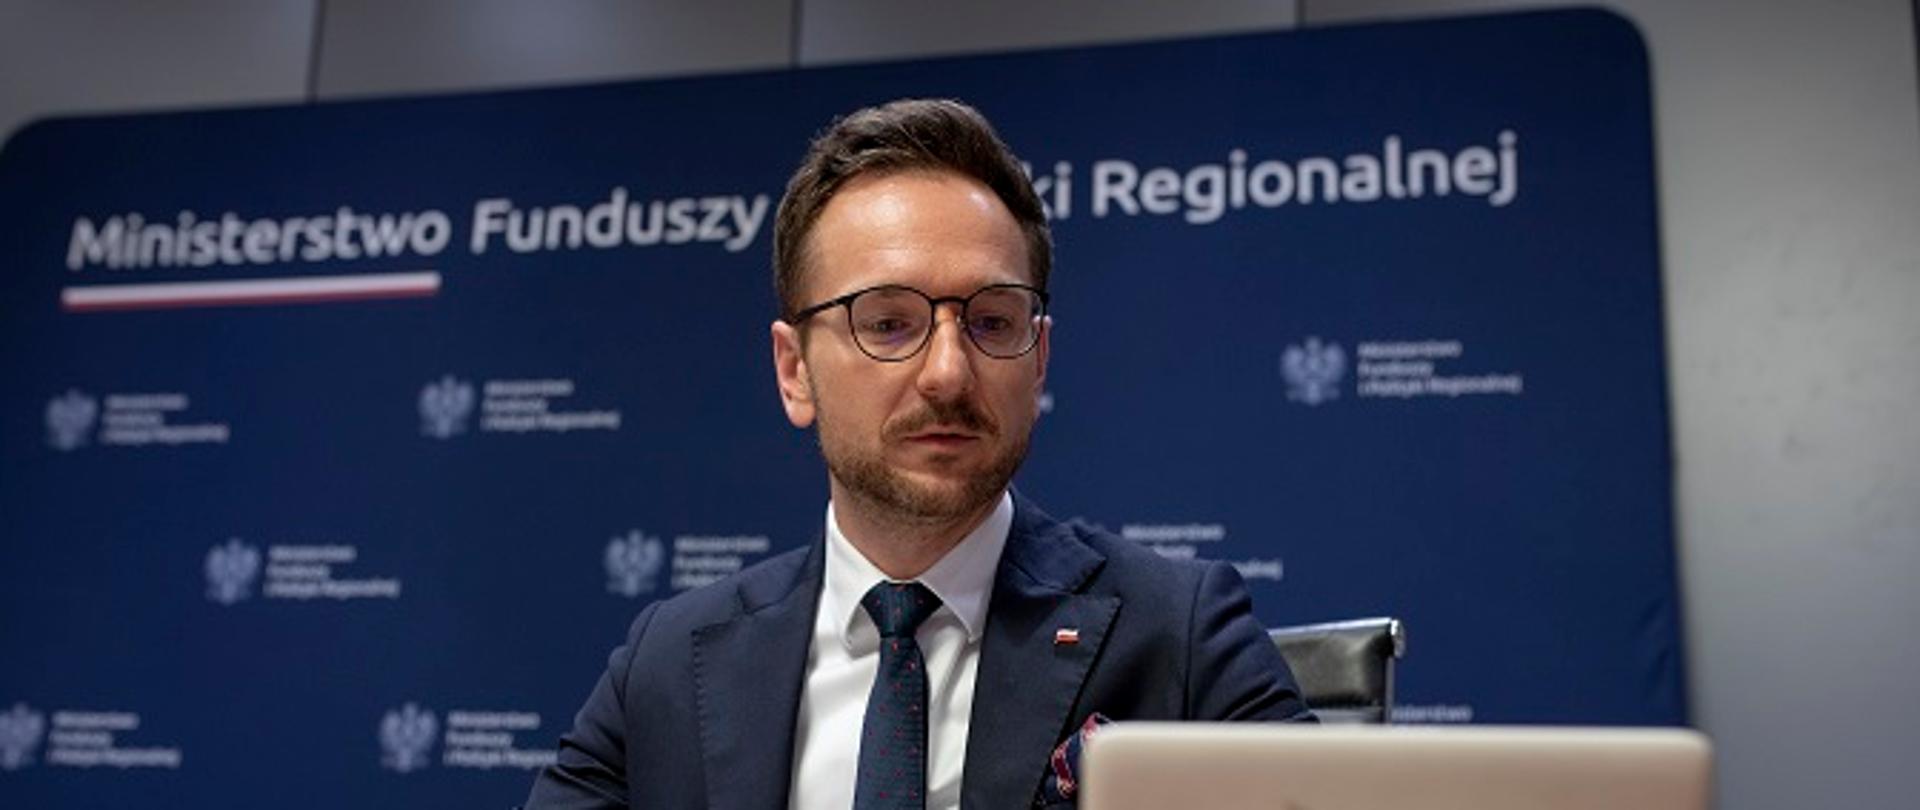 Minister Waldemar Buda siedzi przy stole konferencyjnym, patrzy w tablet. Za plecami ścianka z logo MFiPR.